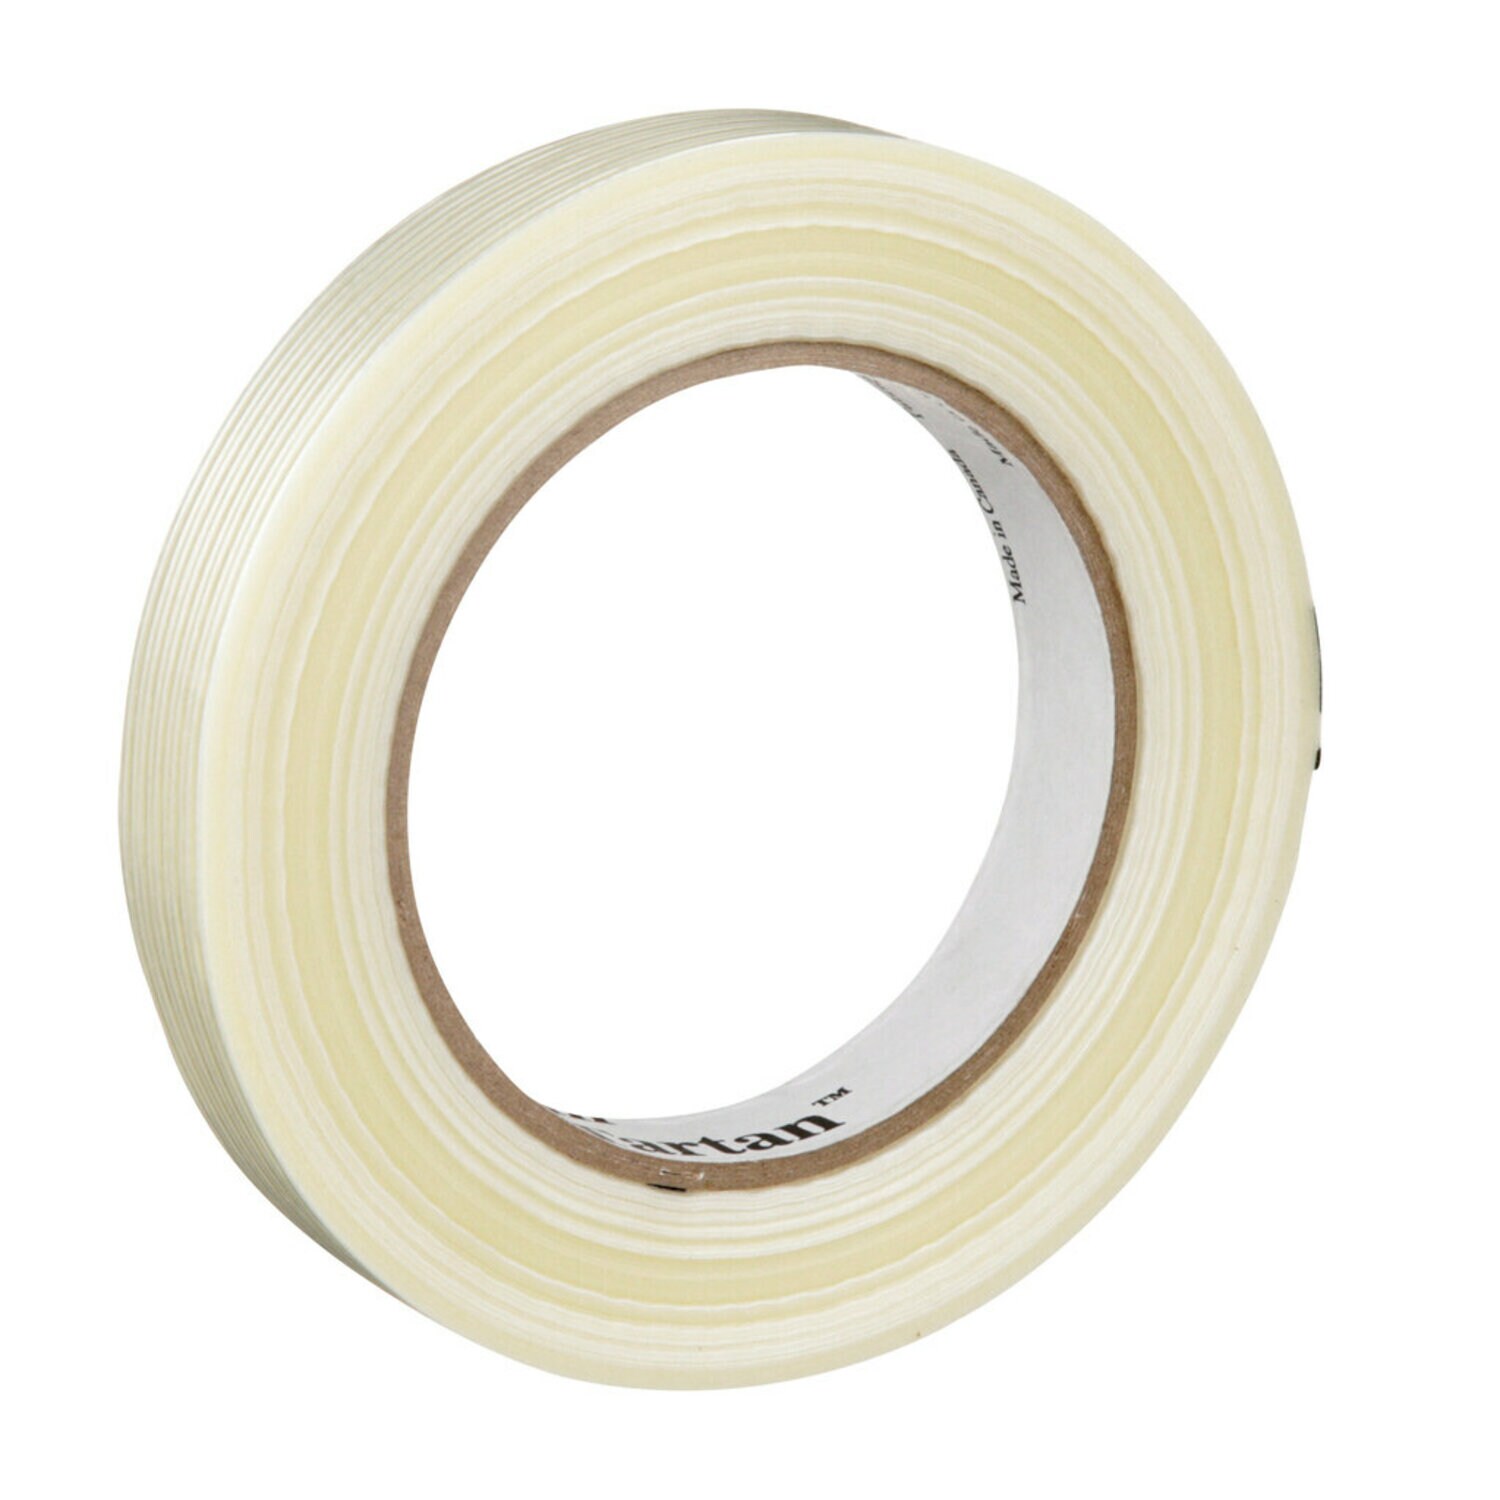 7100009809 - Tartan Filament Tape 8934, Clear, 12 mm x 55 m, 4 mil, 72 rolls per
case